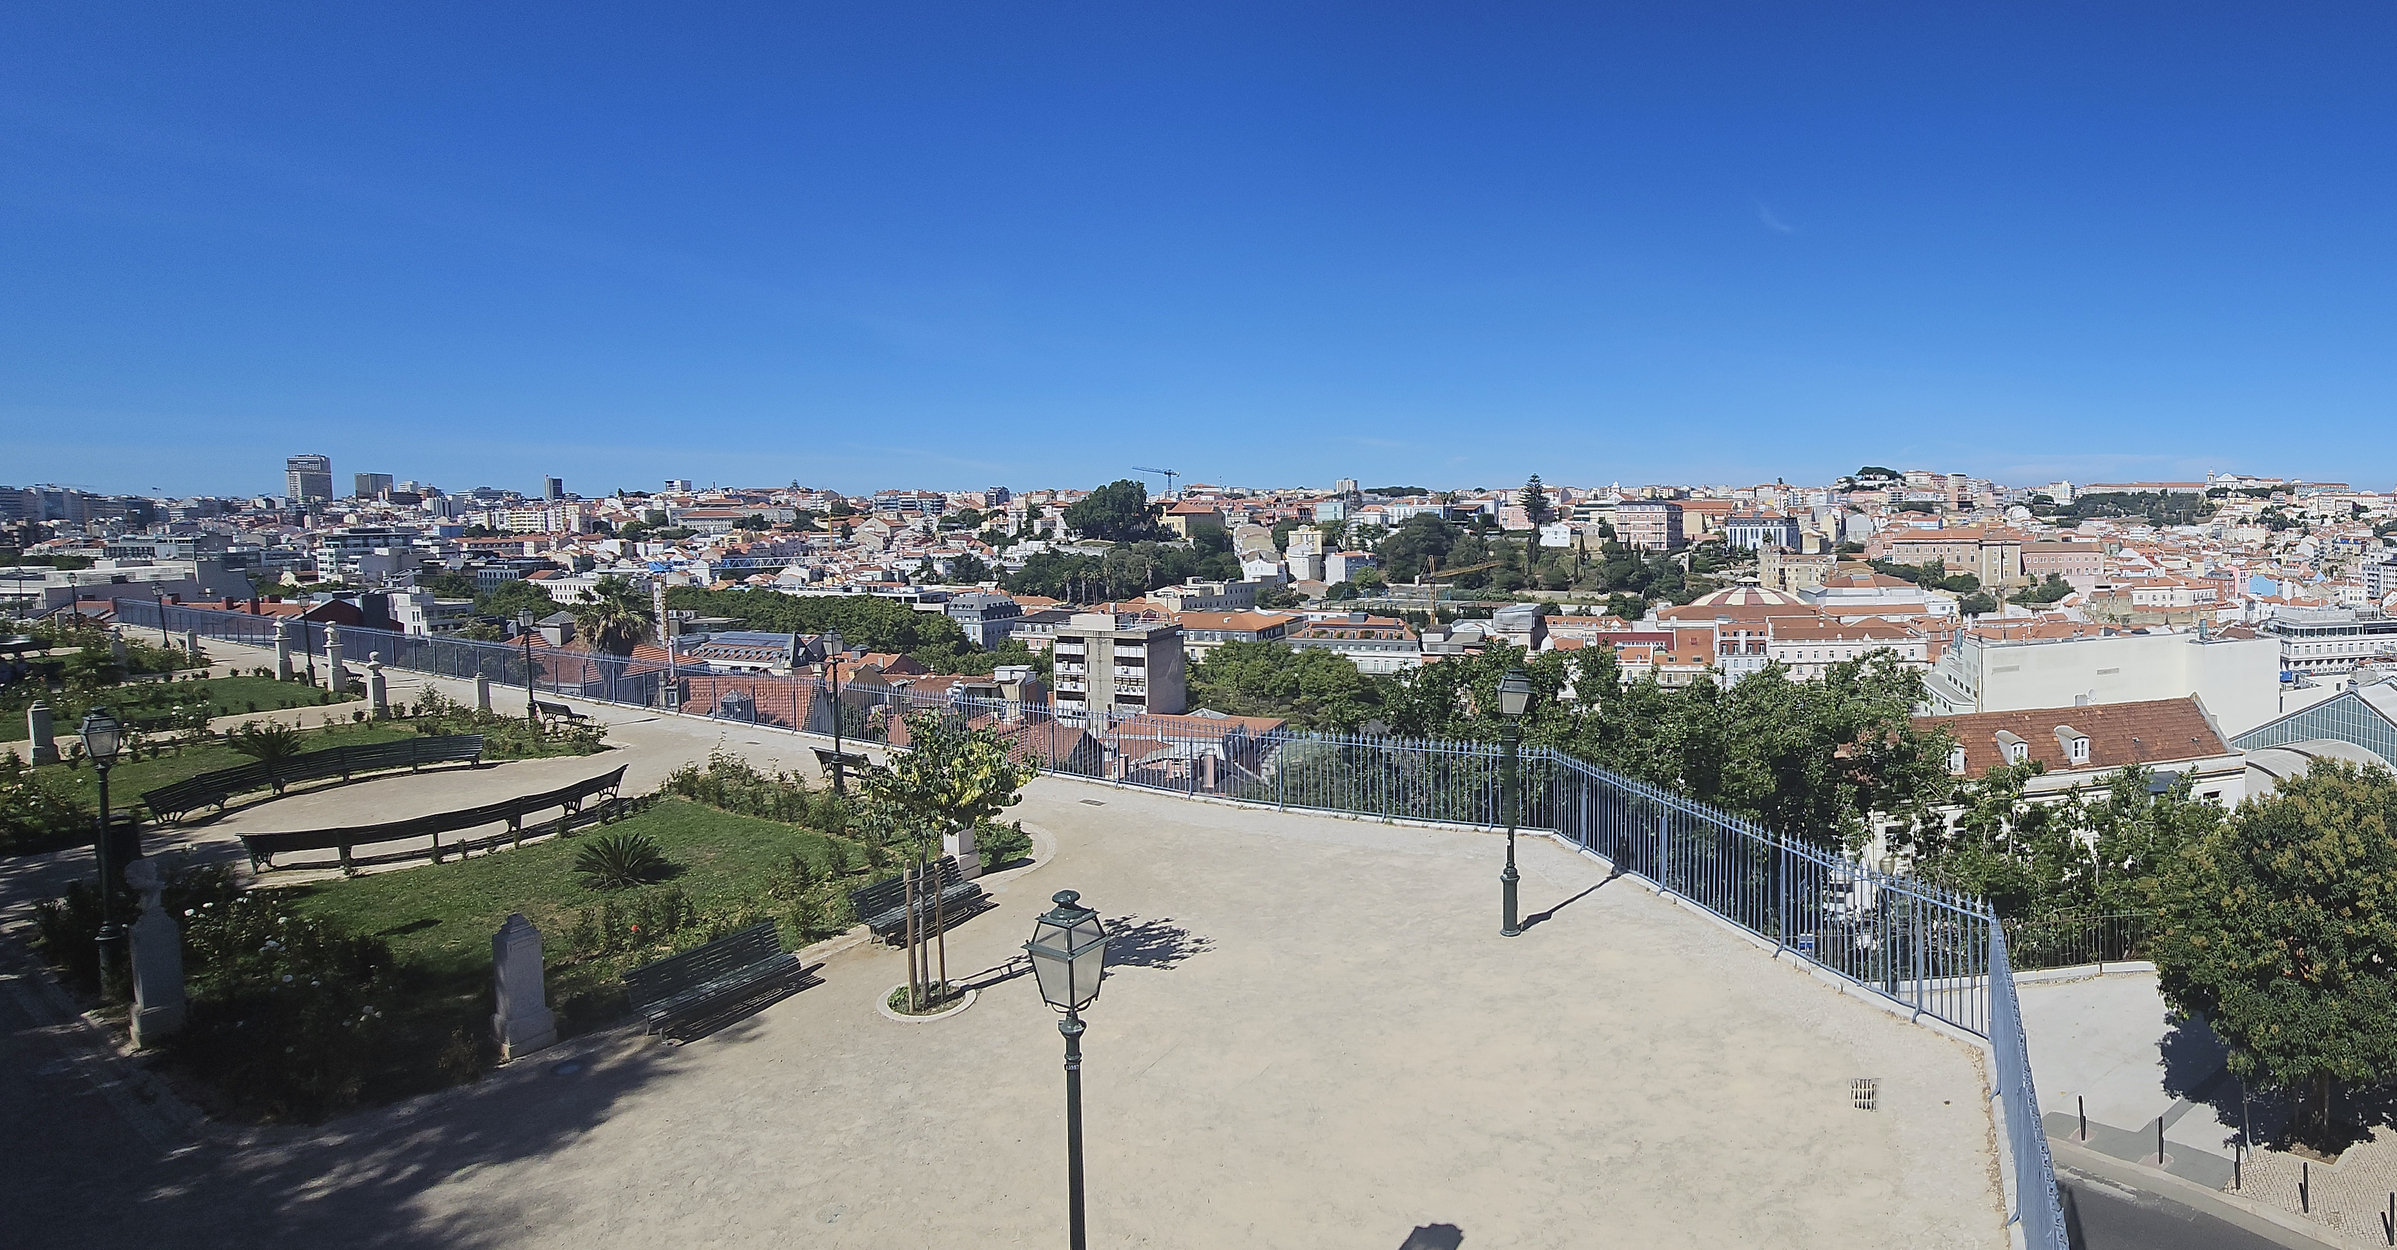 Lisabona, Portugalia, SUrsa foto dreamstime.com